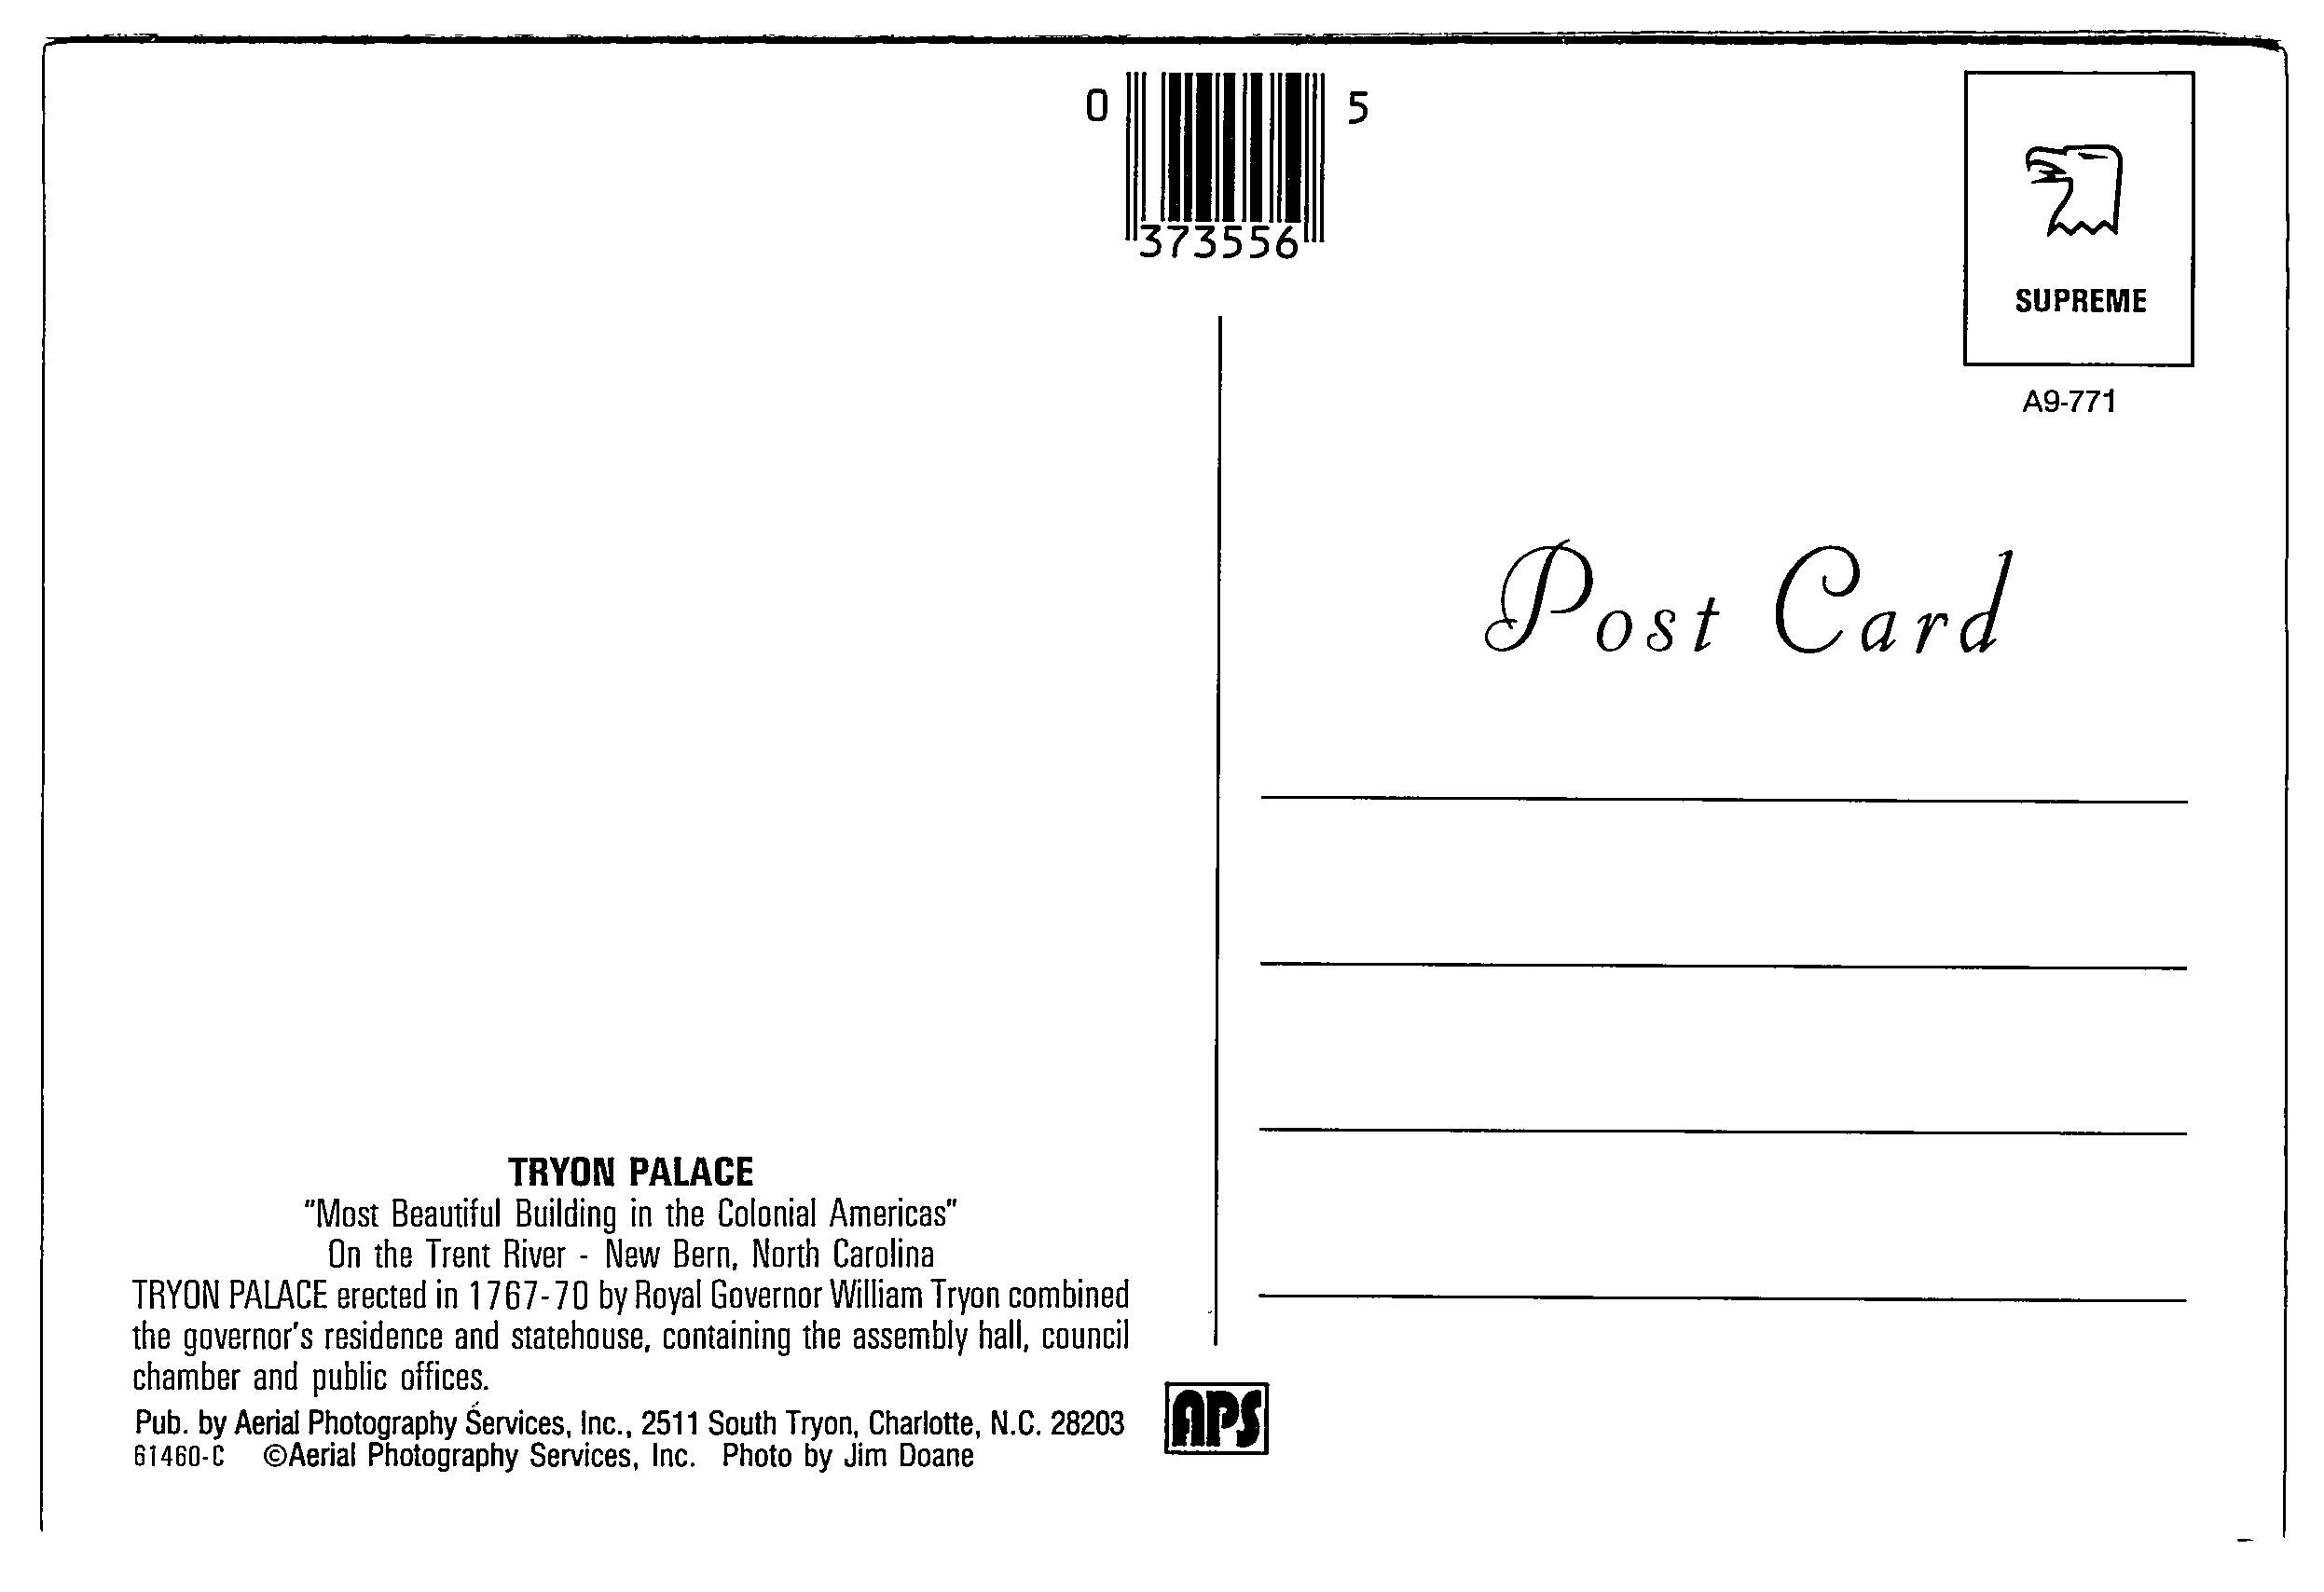 Tryon Palace, New Bern, North Carolina, Vintage Post Card